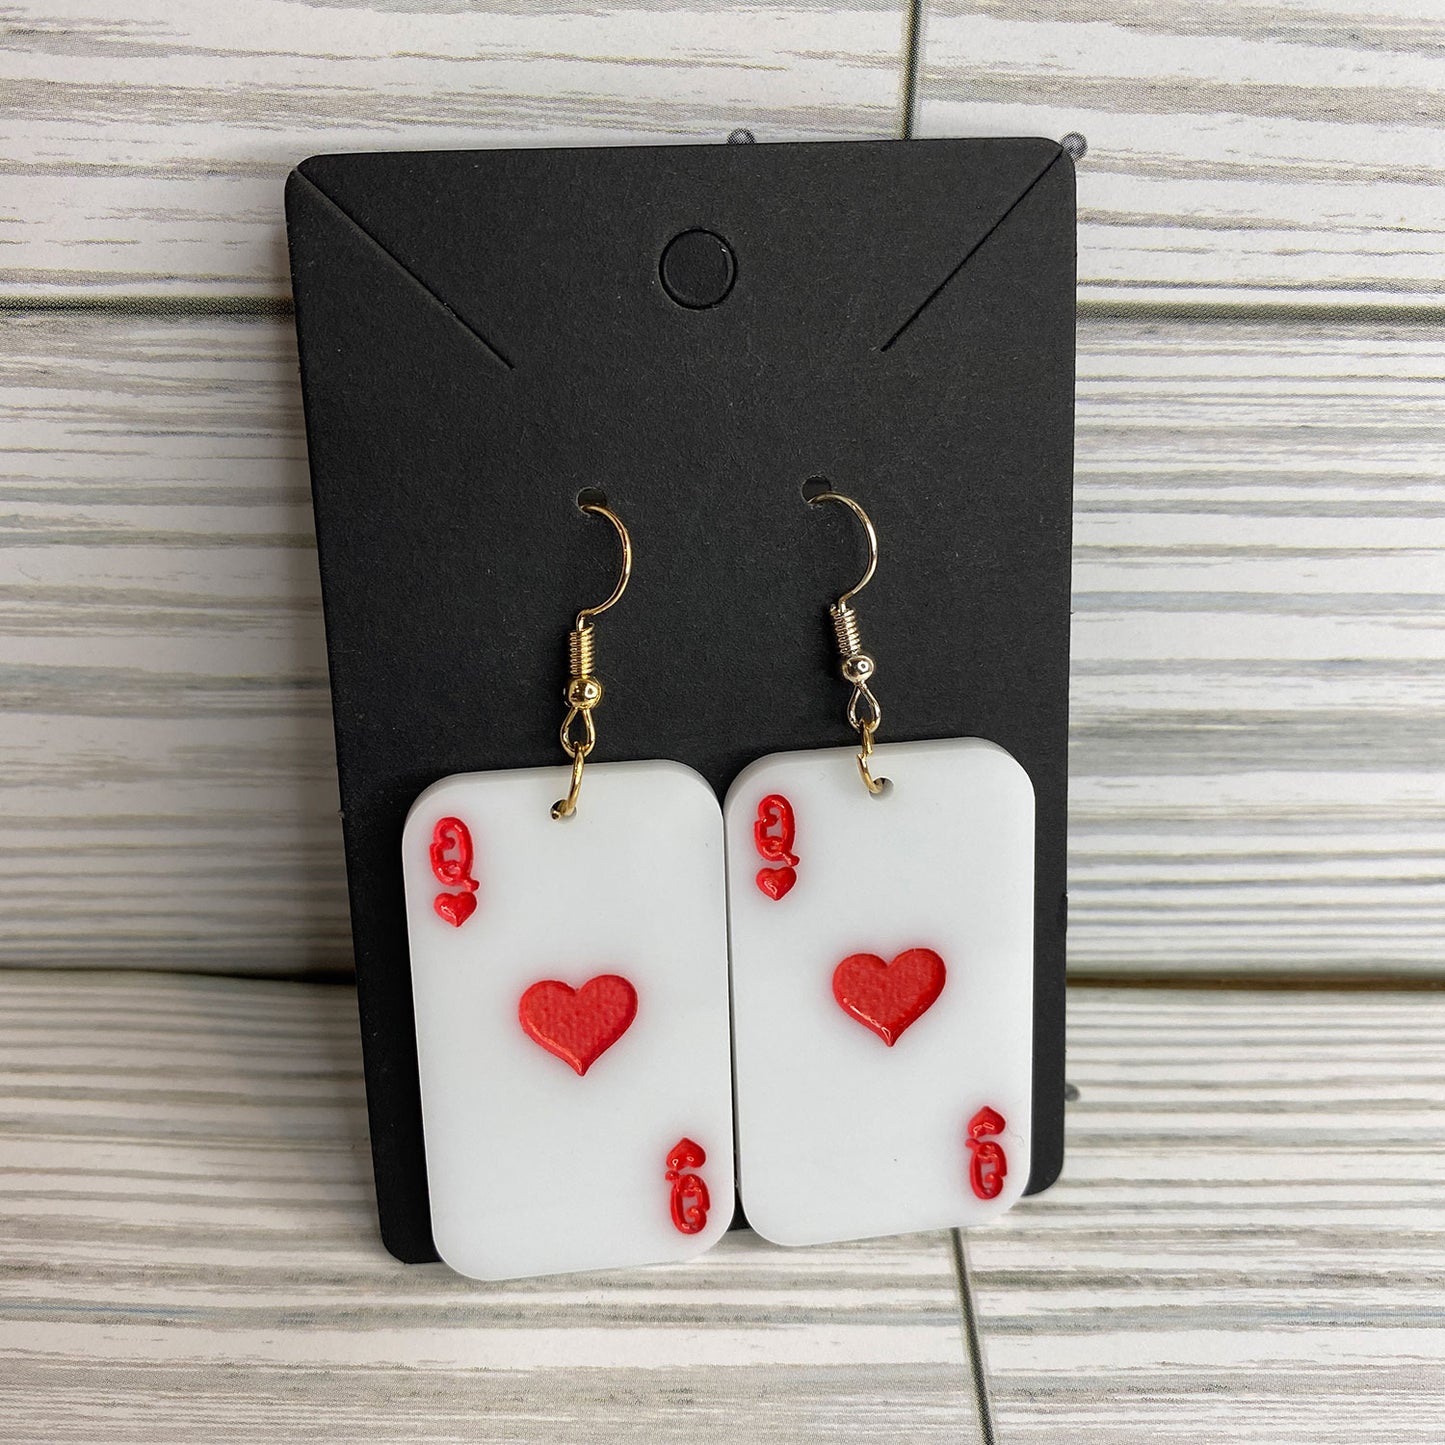 Queen of Hearts Playing Card Casino Poker Dangle Earrings